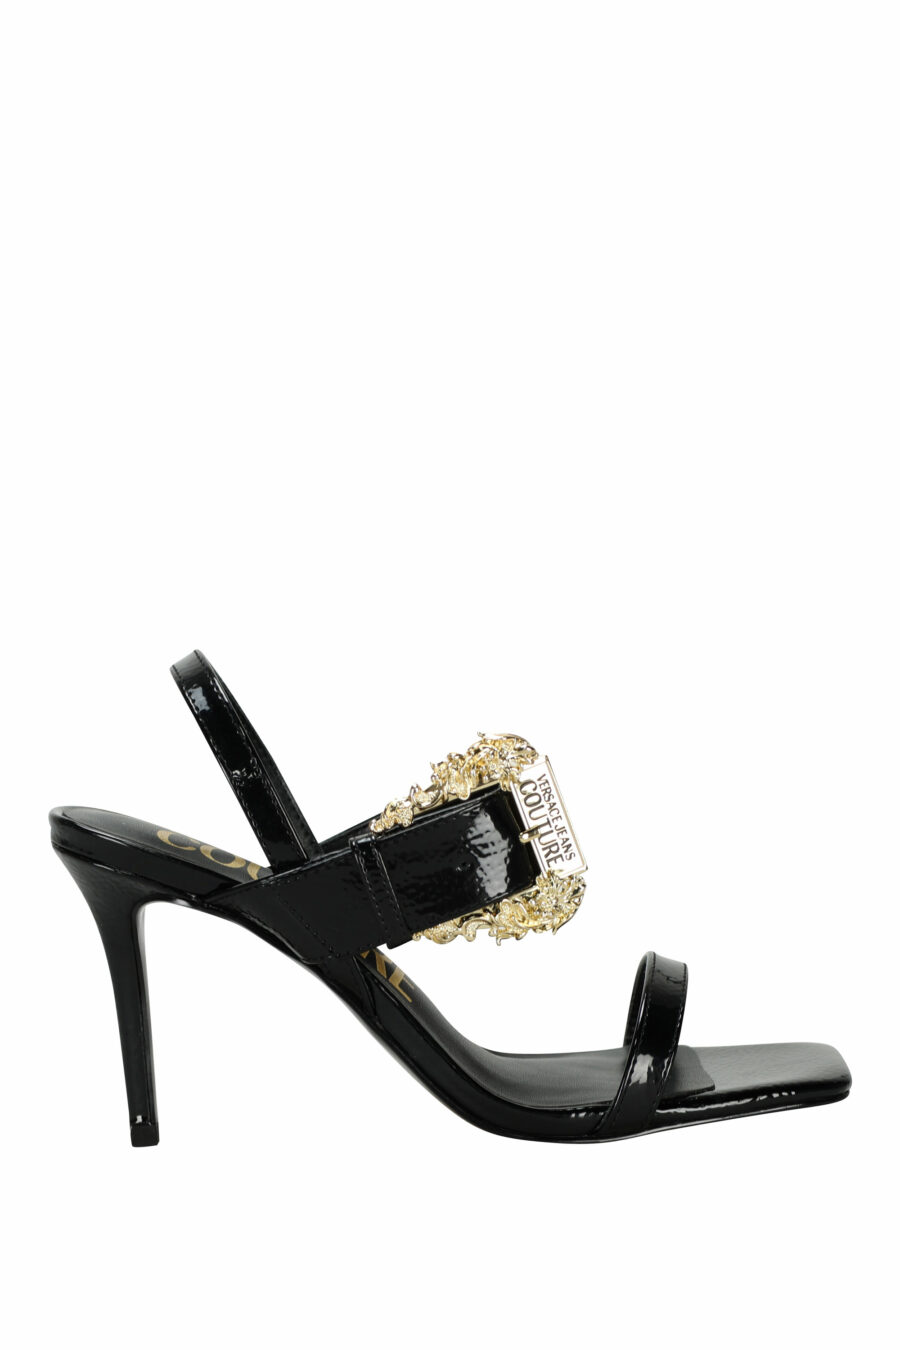 Black stiletto heels with golden baroque buckle - 8052019607789